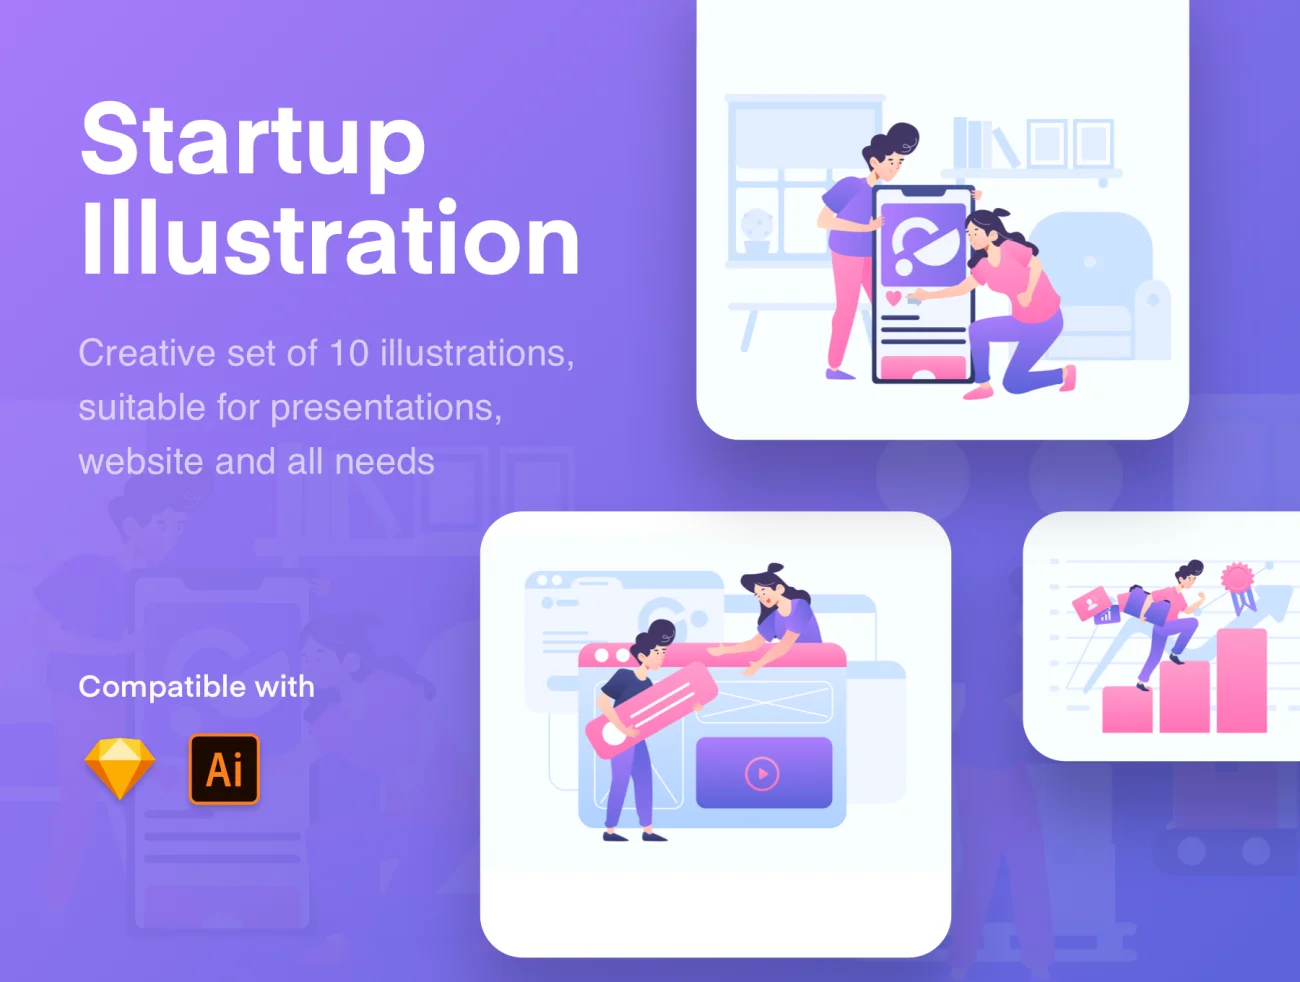 Start Up Illustration Kit 易用可定制多格式启动插图套件-人物插画、场景插画、学习生活、插画、插画风格、概念创意、线条手绘、趣味漫画-到位啦UI